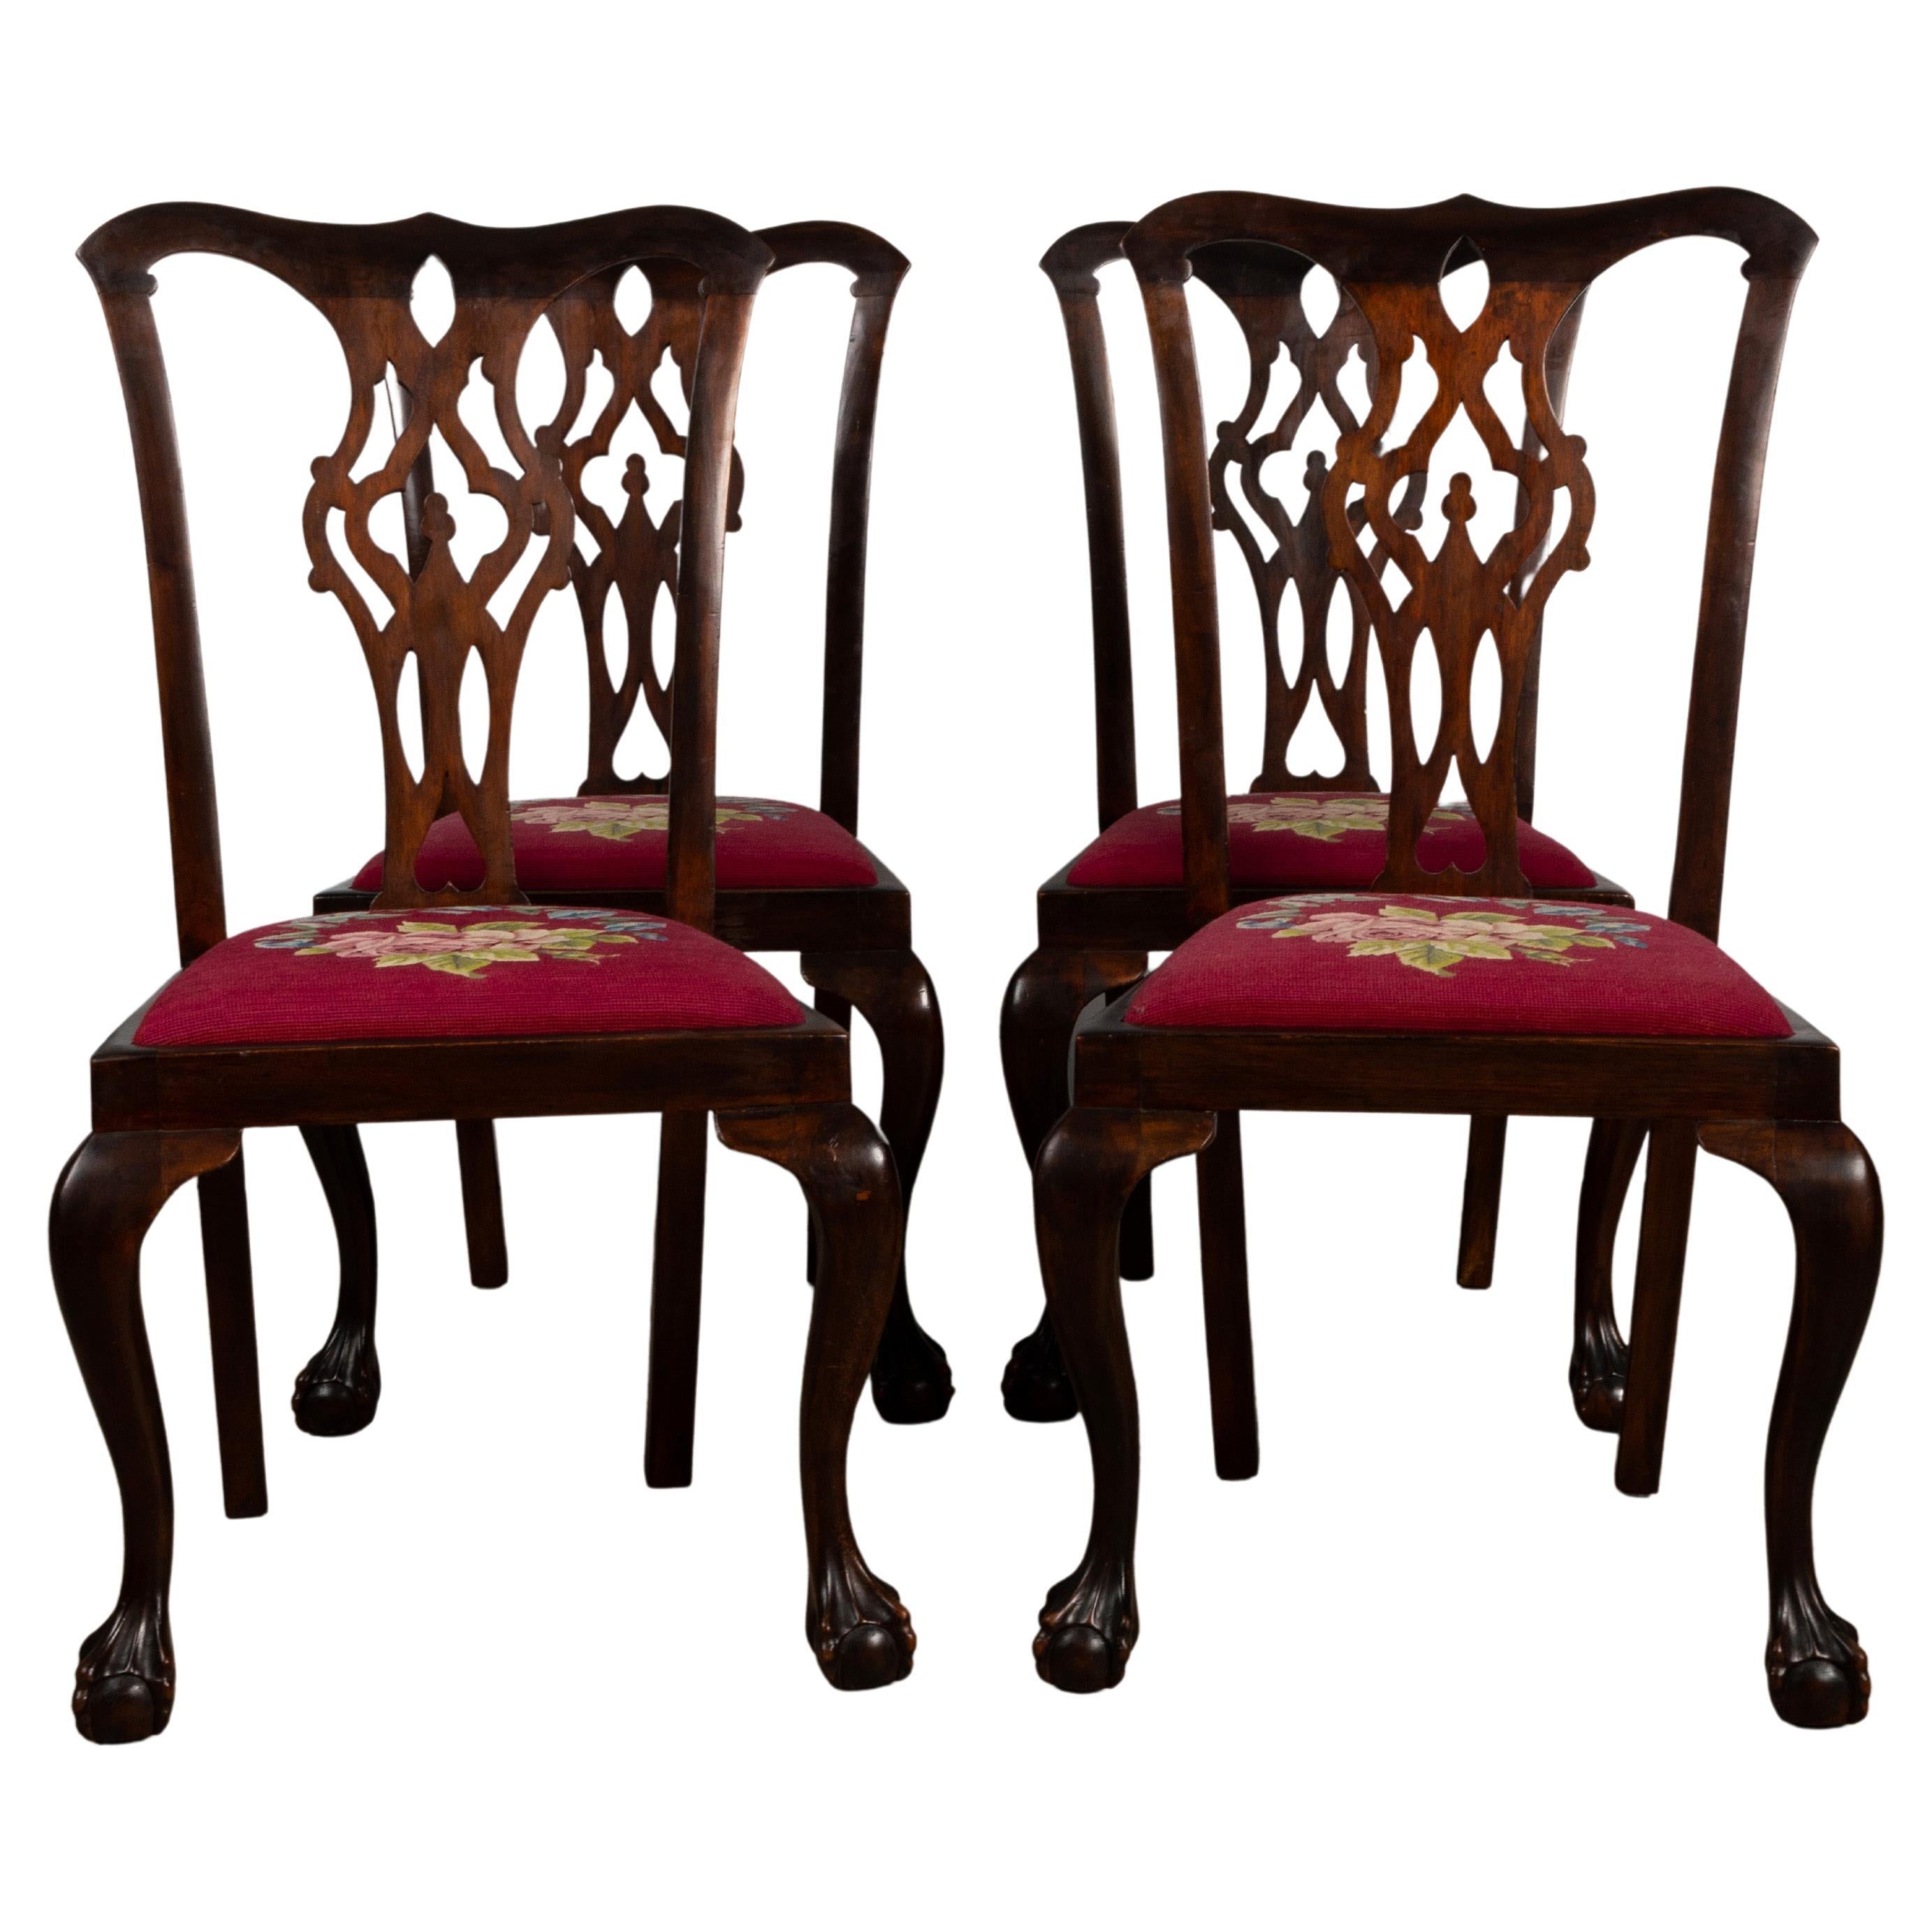 4 Anciennes chaises anglaises du 19ème siècle en acajou Chippendale Revival